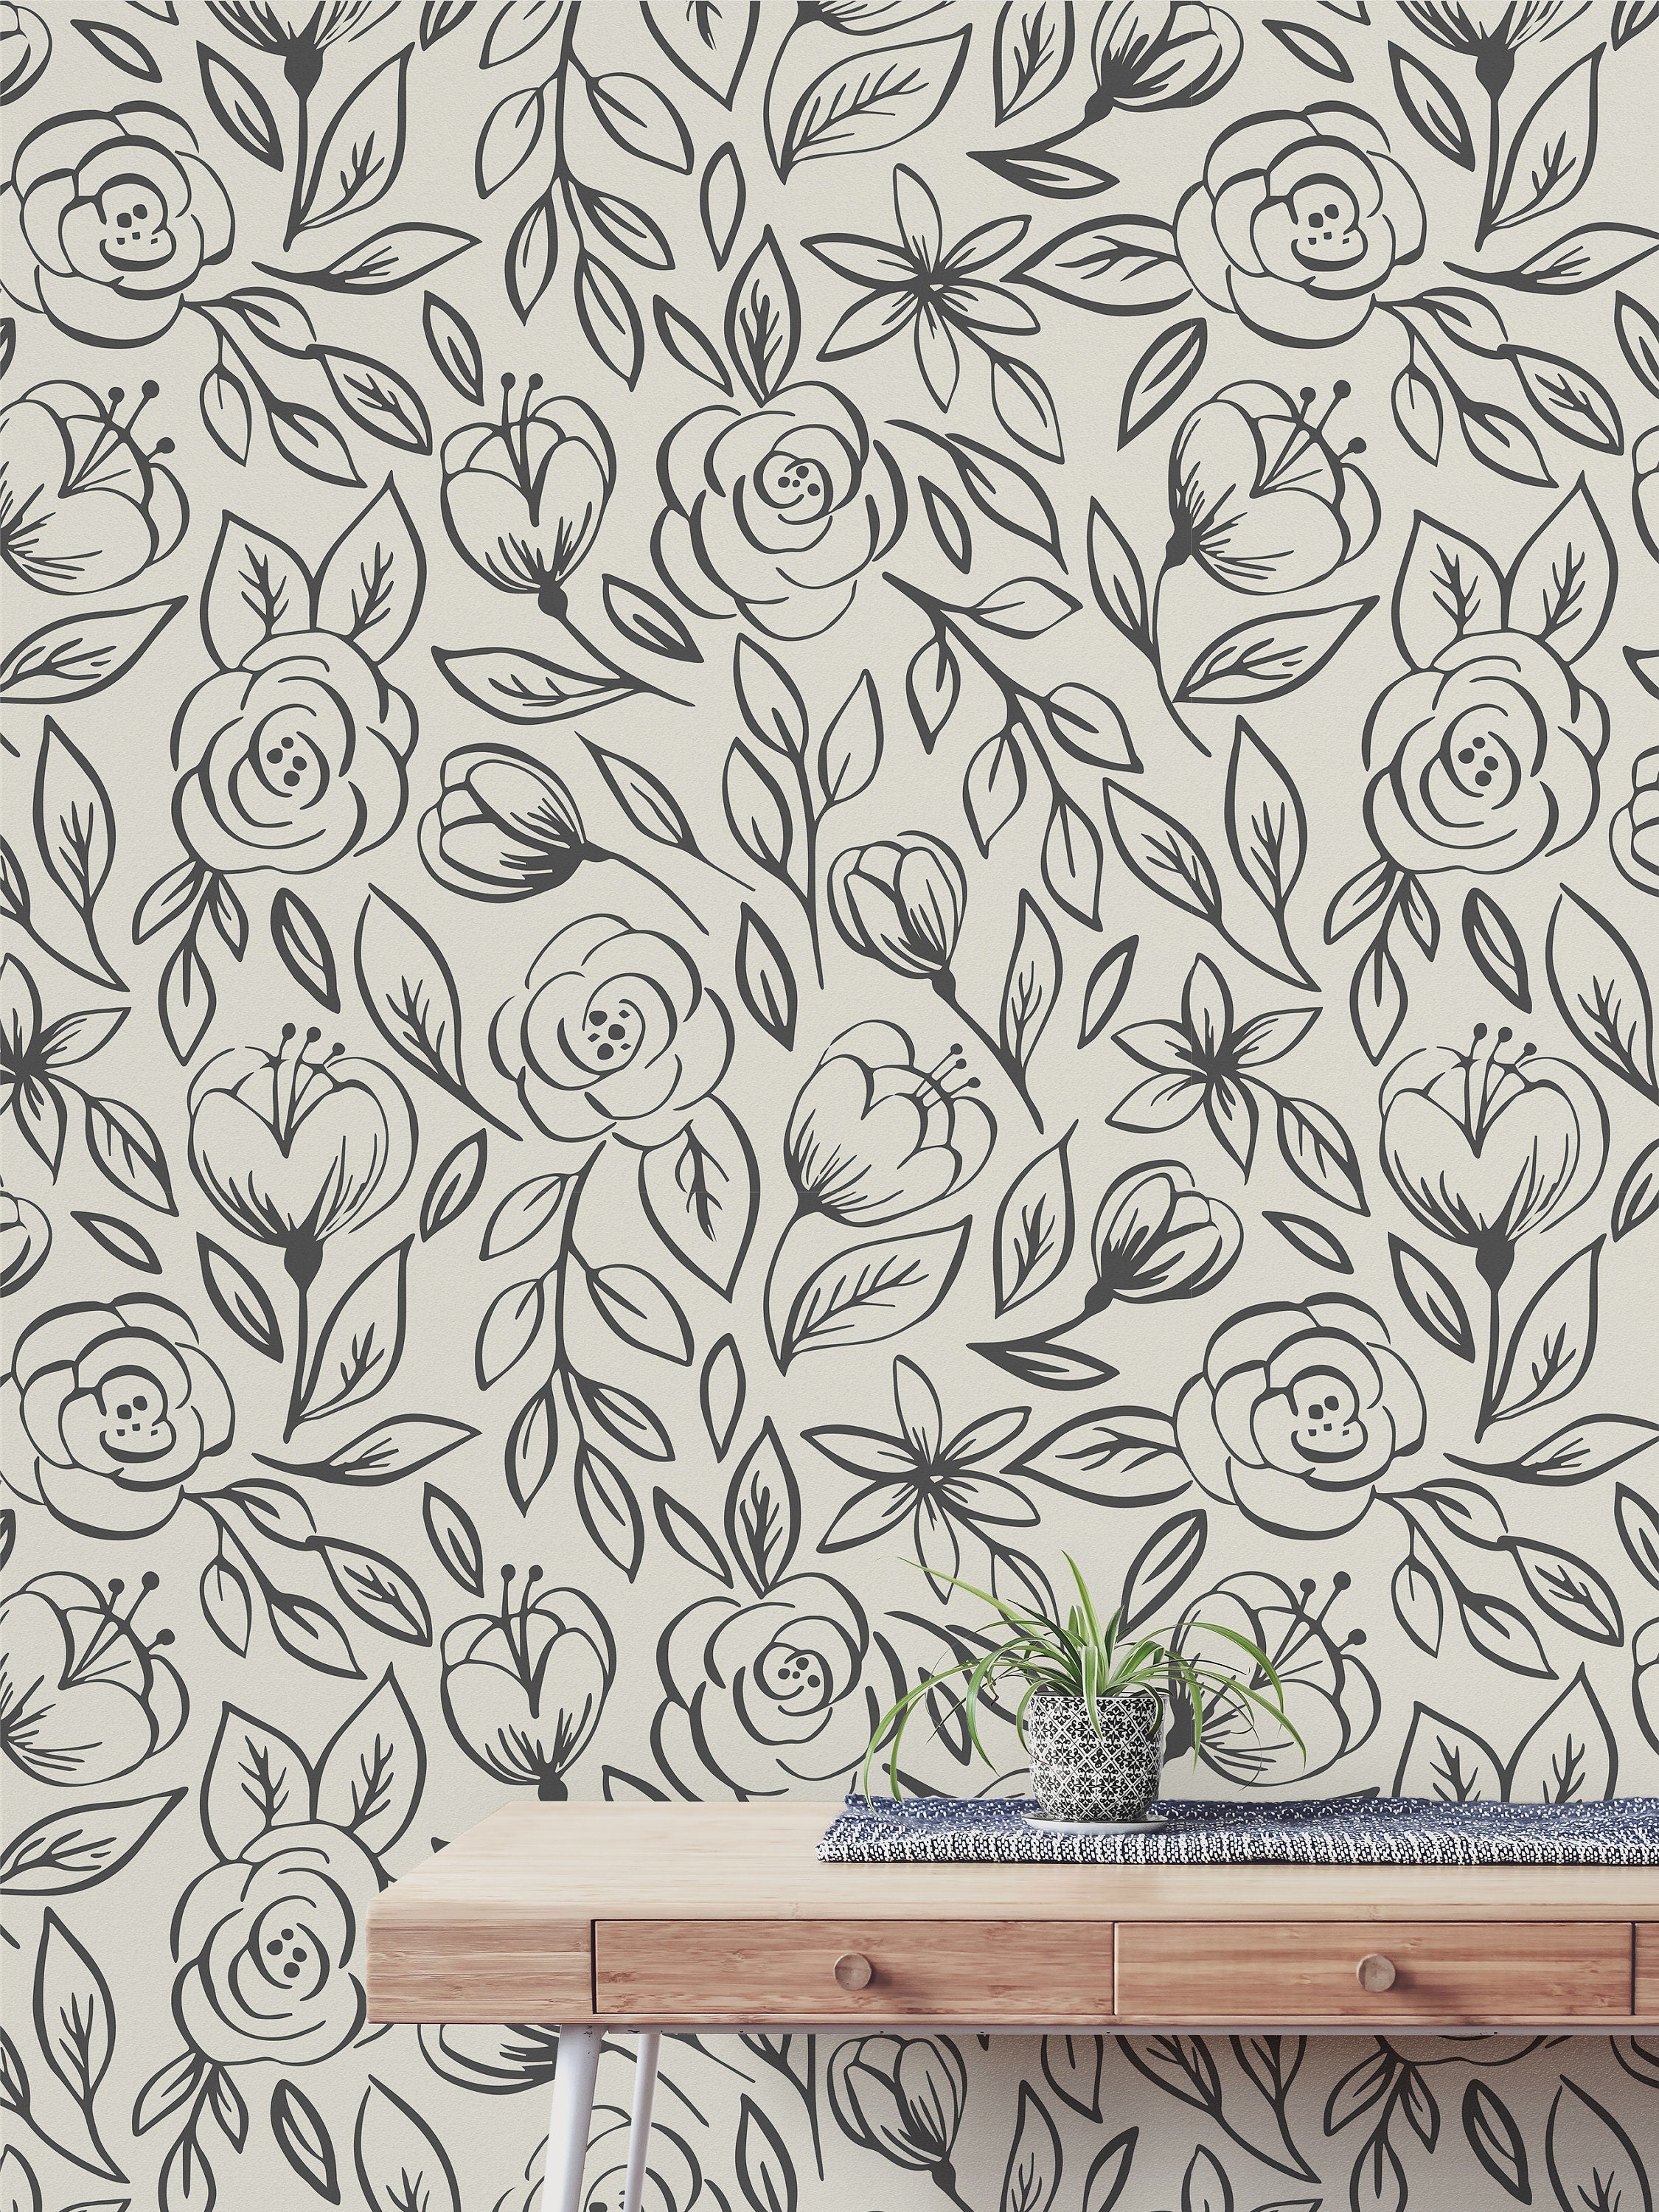 Black Cream Rose Wallpaper | Removable Wallpaper | Peel And Stick Wallpaper | Adhesive Wallpaper | Wall Paper Peel Stick Wall Mural 2368 - JamesAndColors